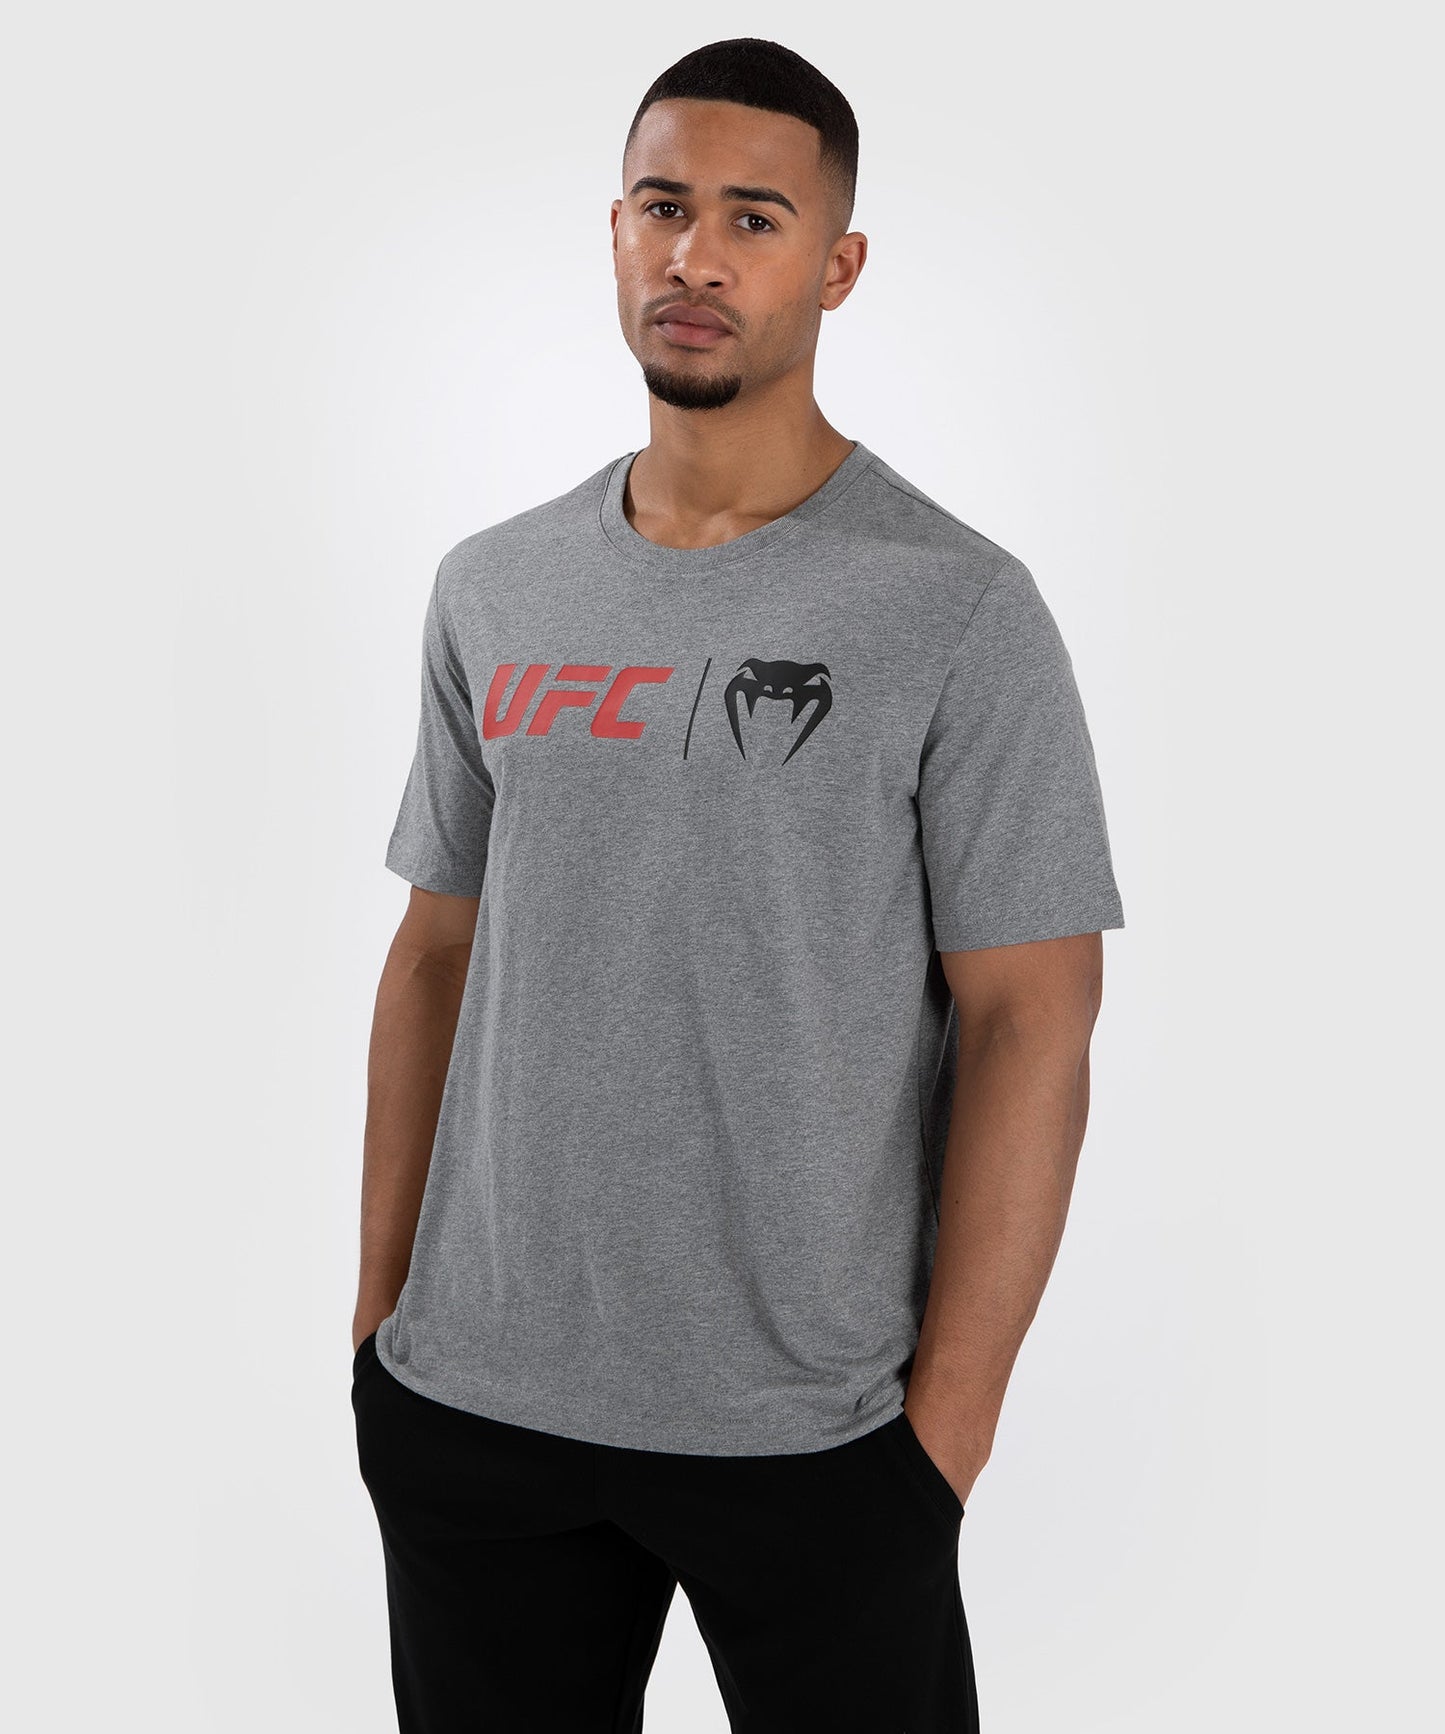 UFC Venum Classic T-shirt - Grijs/Rood